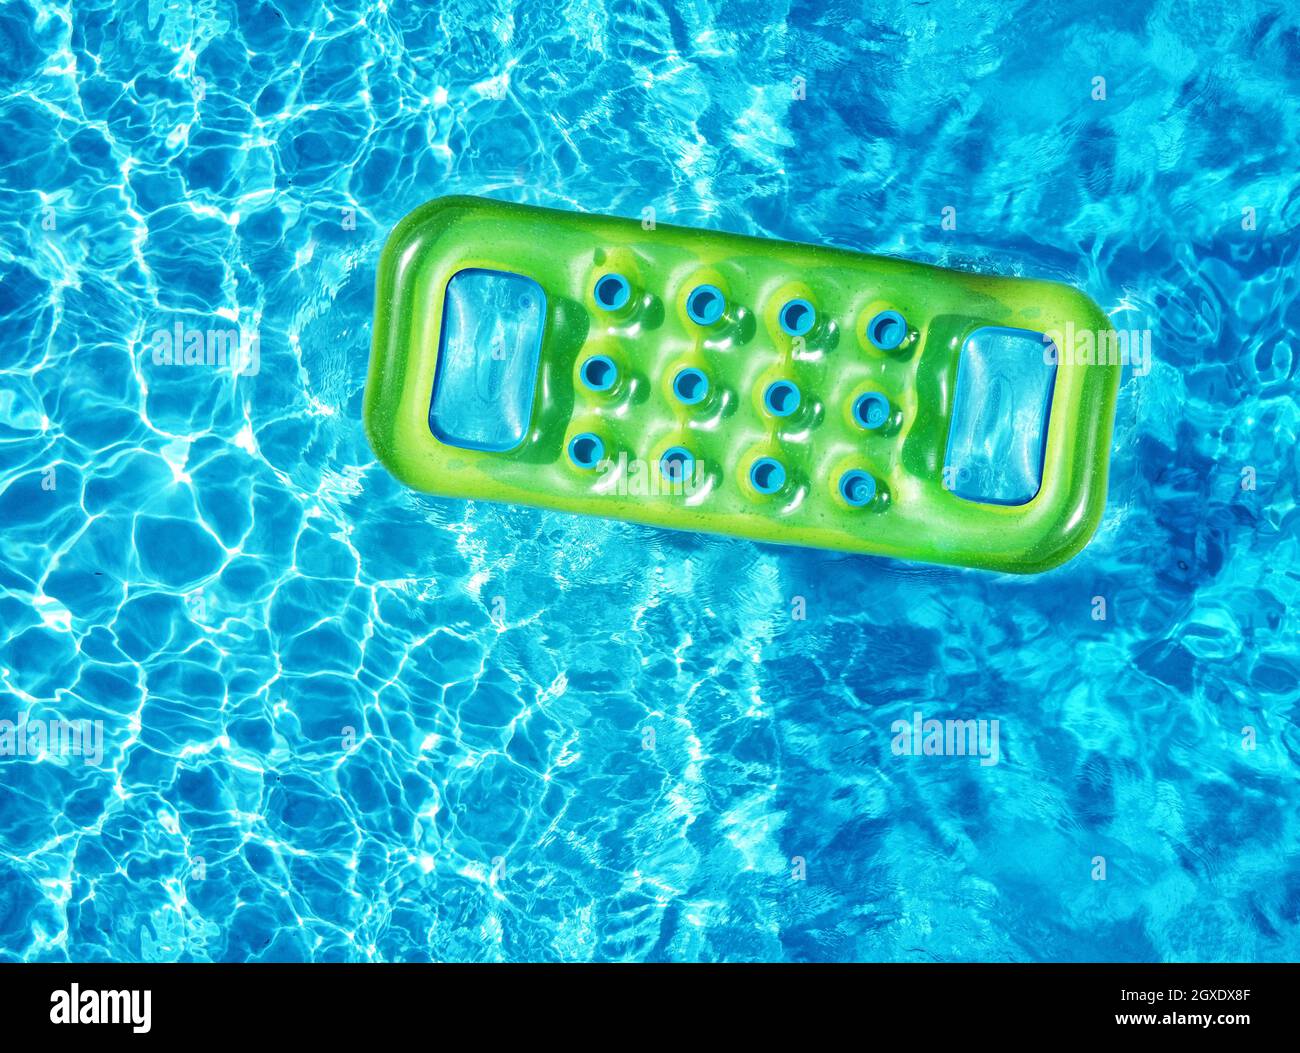 Da sopra drone vista del verde brillante materasso gonfiabile galleggiante su acqua blu superficie della piscina in luce solare in estate Foto Stock